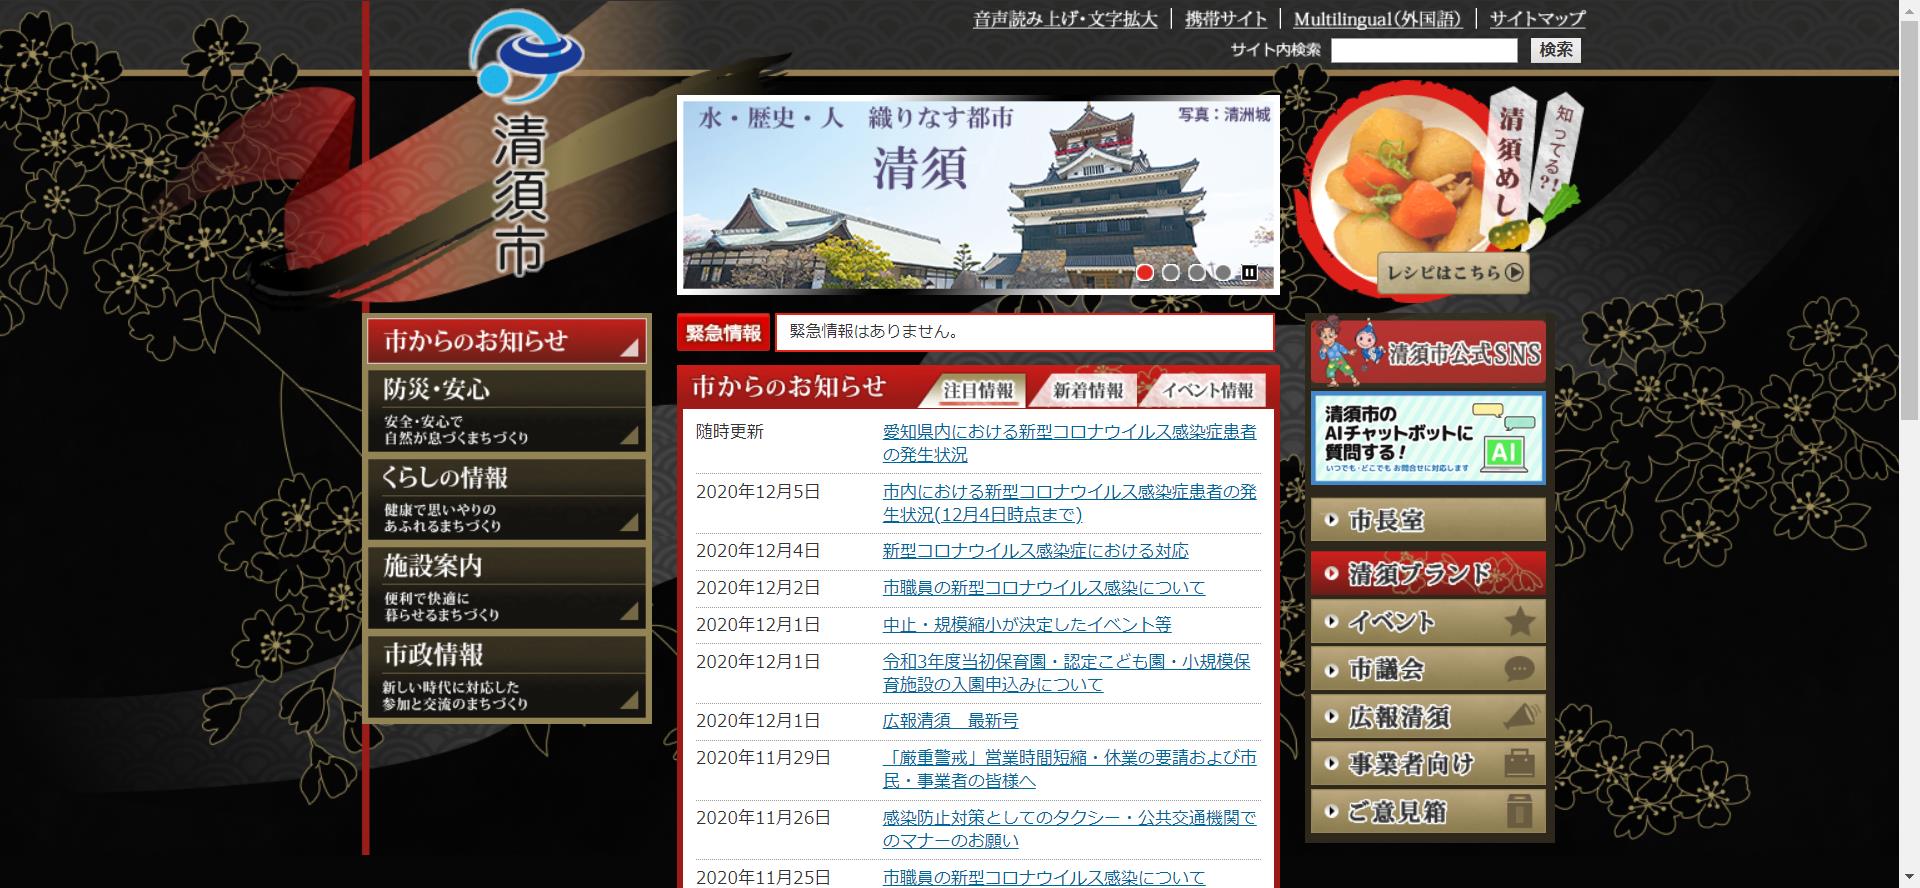 清須市ホームページ